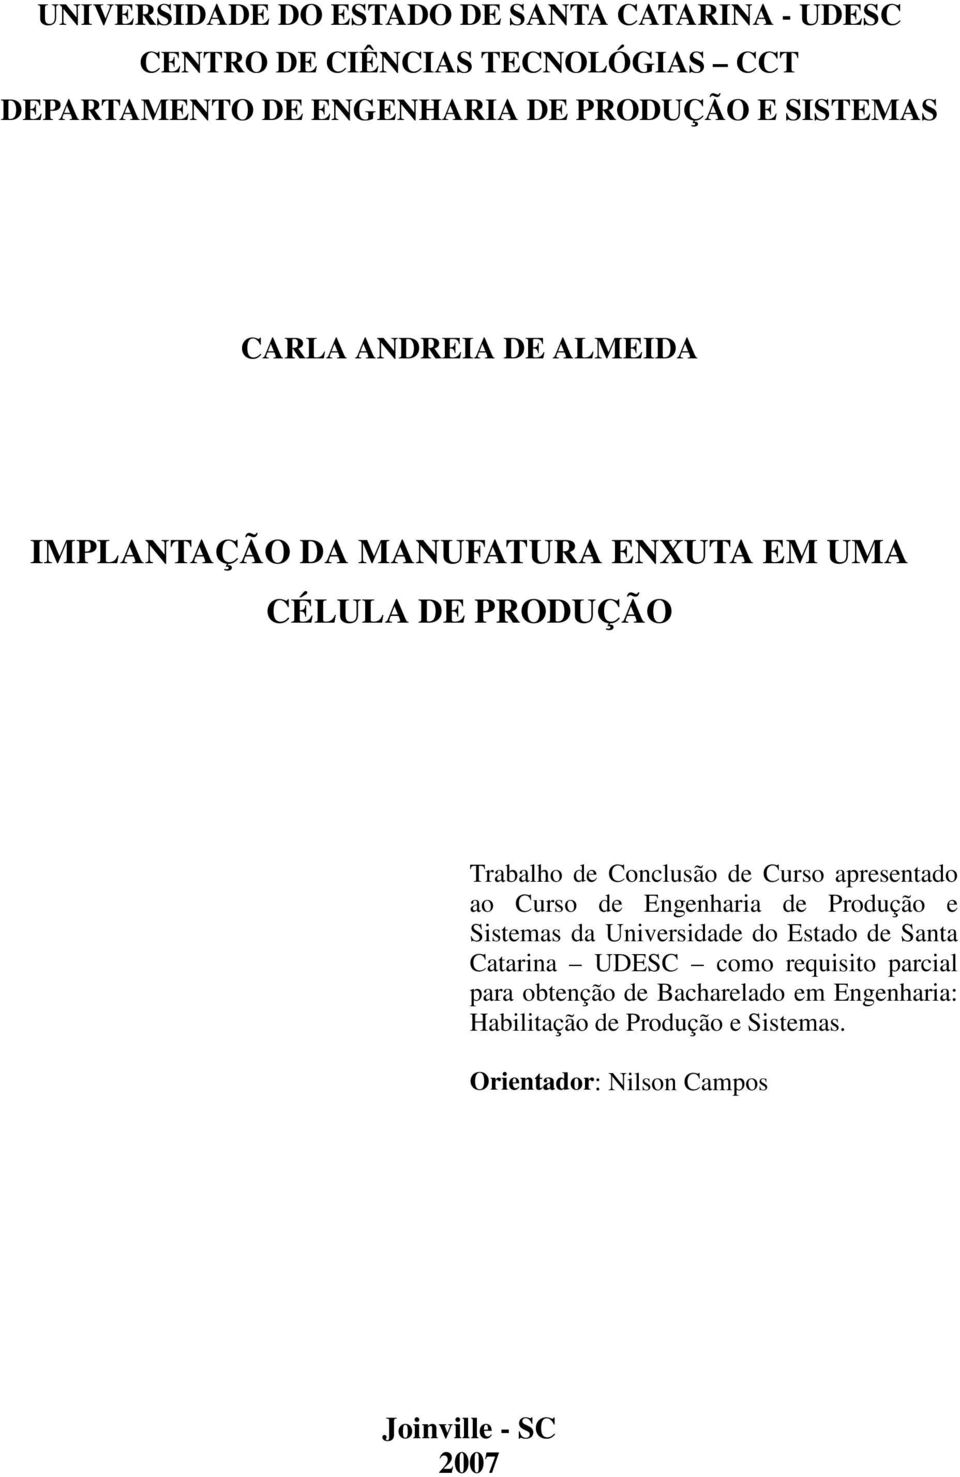 apresentado ao Curso de Engenharia de Produção e Sistemas da Universidade do Estado de Santa Catarina UDESC como requisito